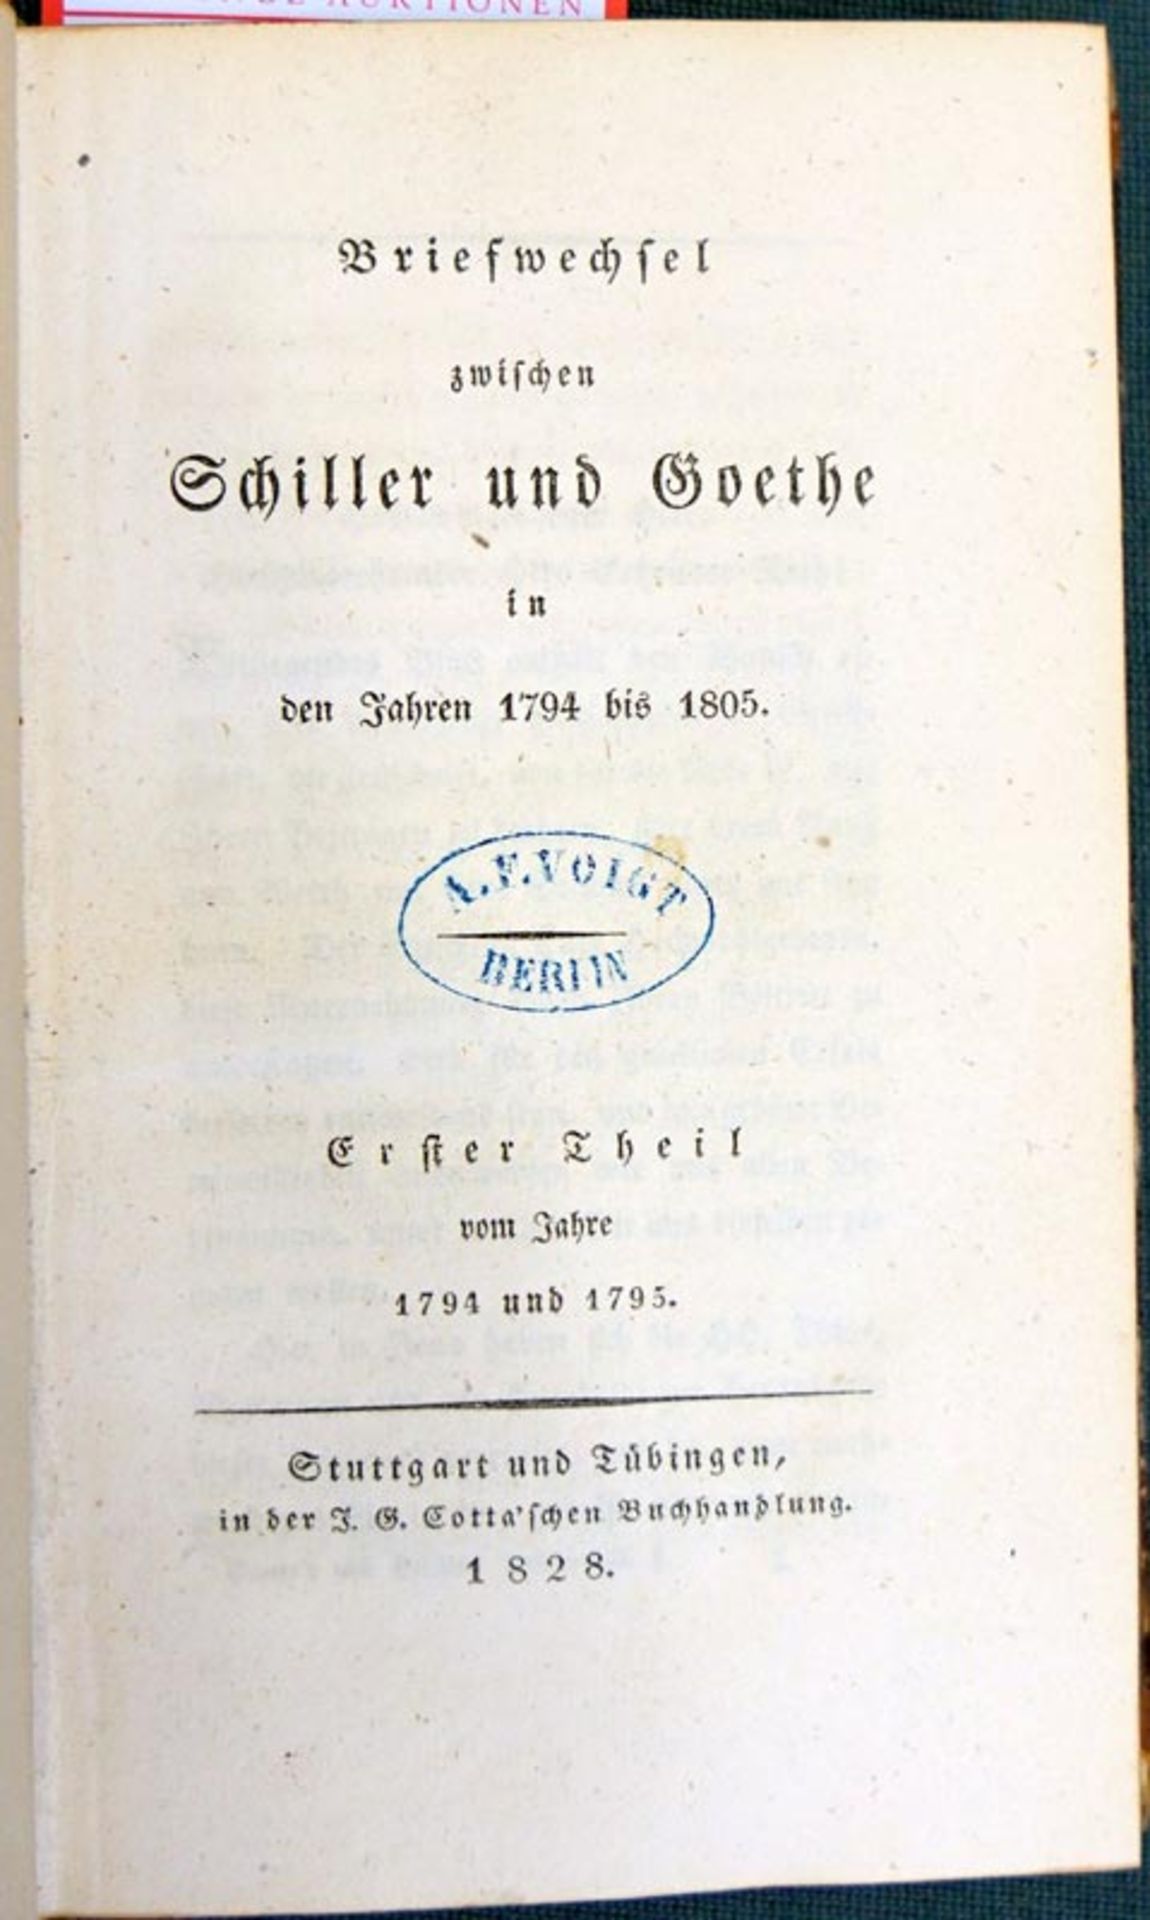 Goethe, Johann Wolfgang von: Briefwechsel zwischen Schiller und Goethe